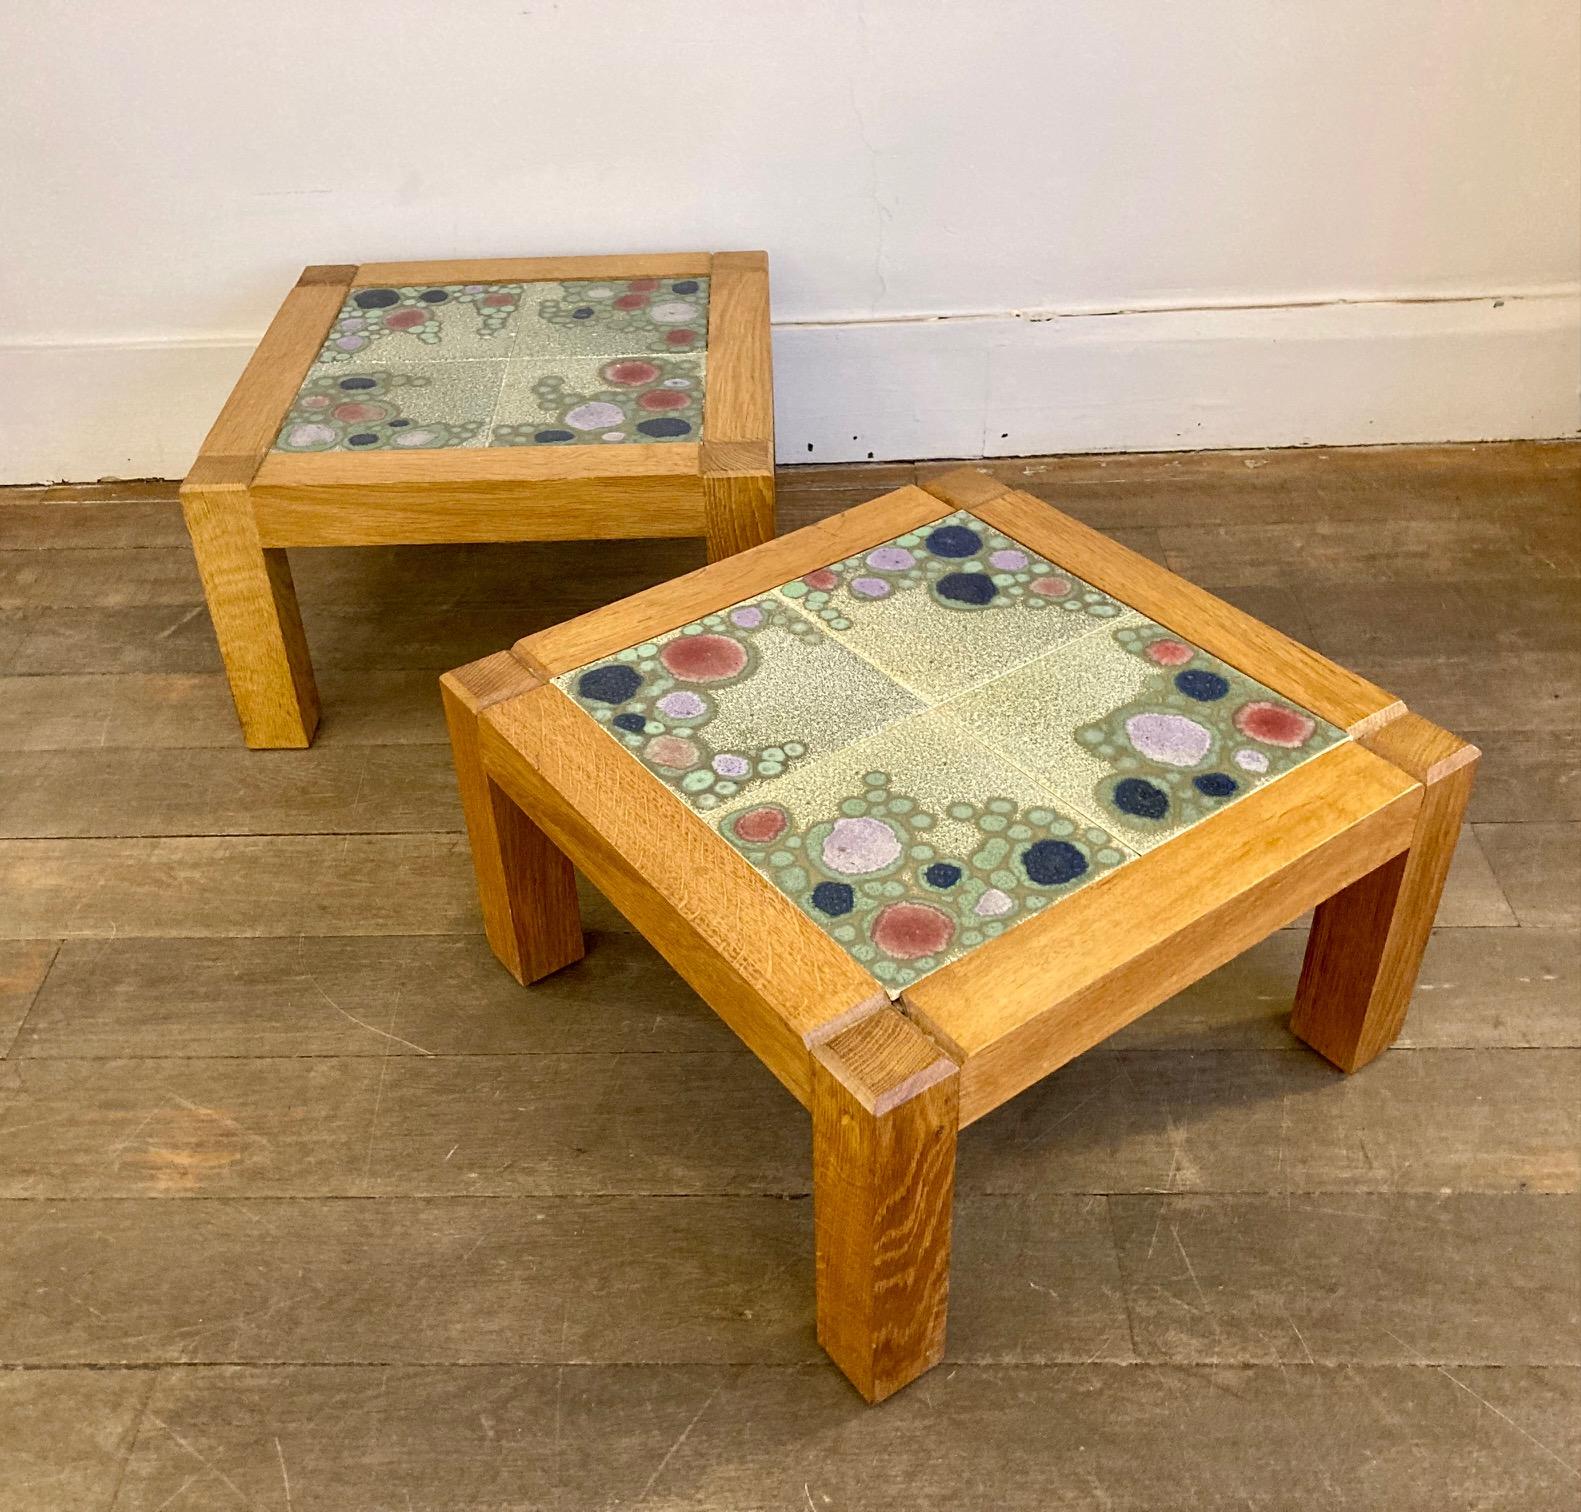 Ein Paar kleine Beistelltische, entworfen von Robert Guillerme und Jacques Chambron. 

Die Tische sind aus massiver Eiche gefertigt.

die Tischplatten sind mit Keramikfliesen von DANIKOWSKI dekoriert.

Ein Tisch trägt den Stempel 